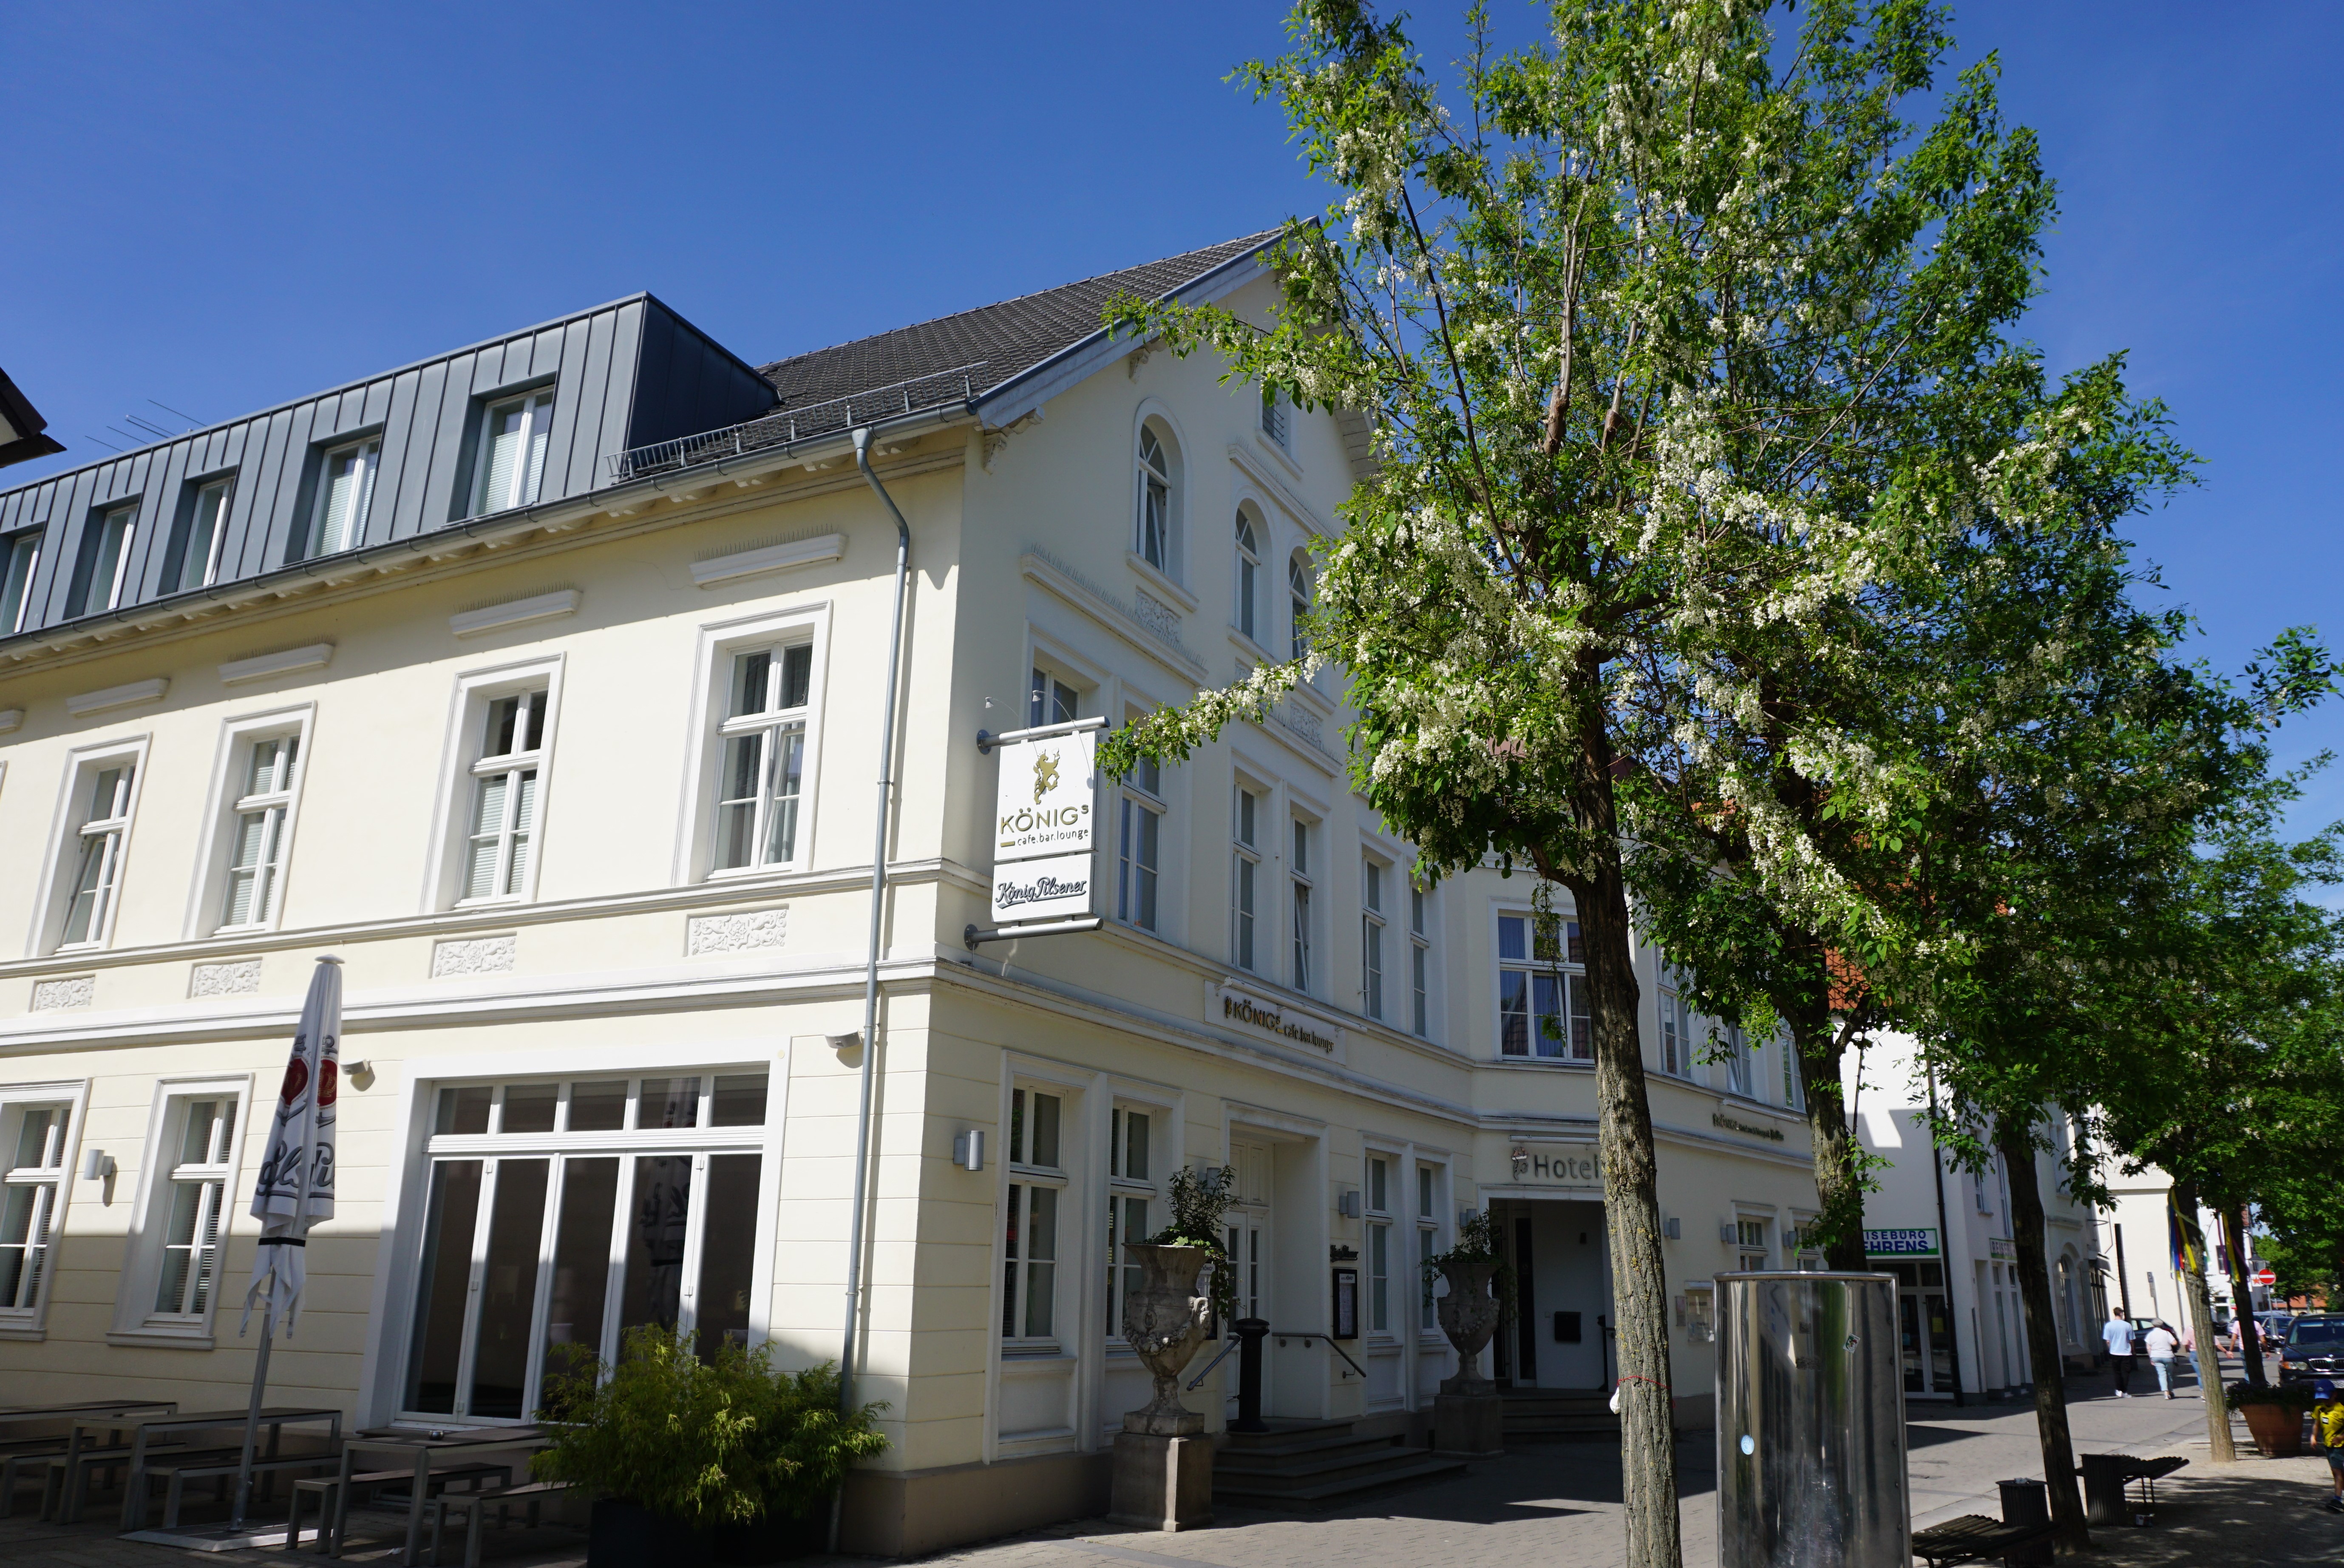 Königs - Hotel am Schlosspark, Rheda-Wiedenbrück.
